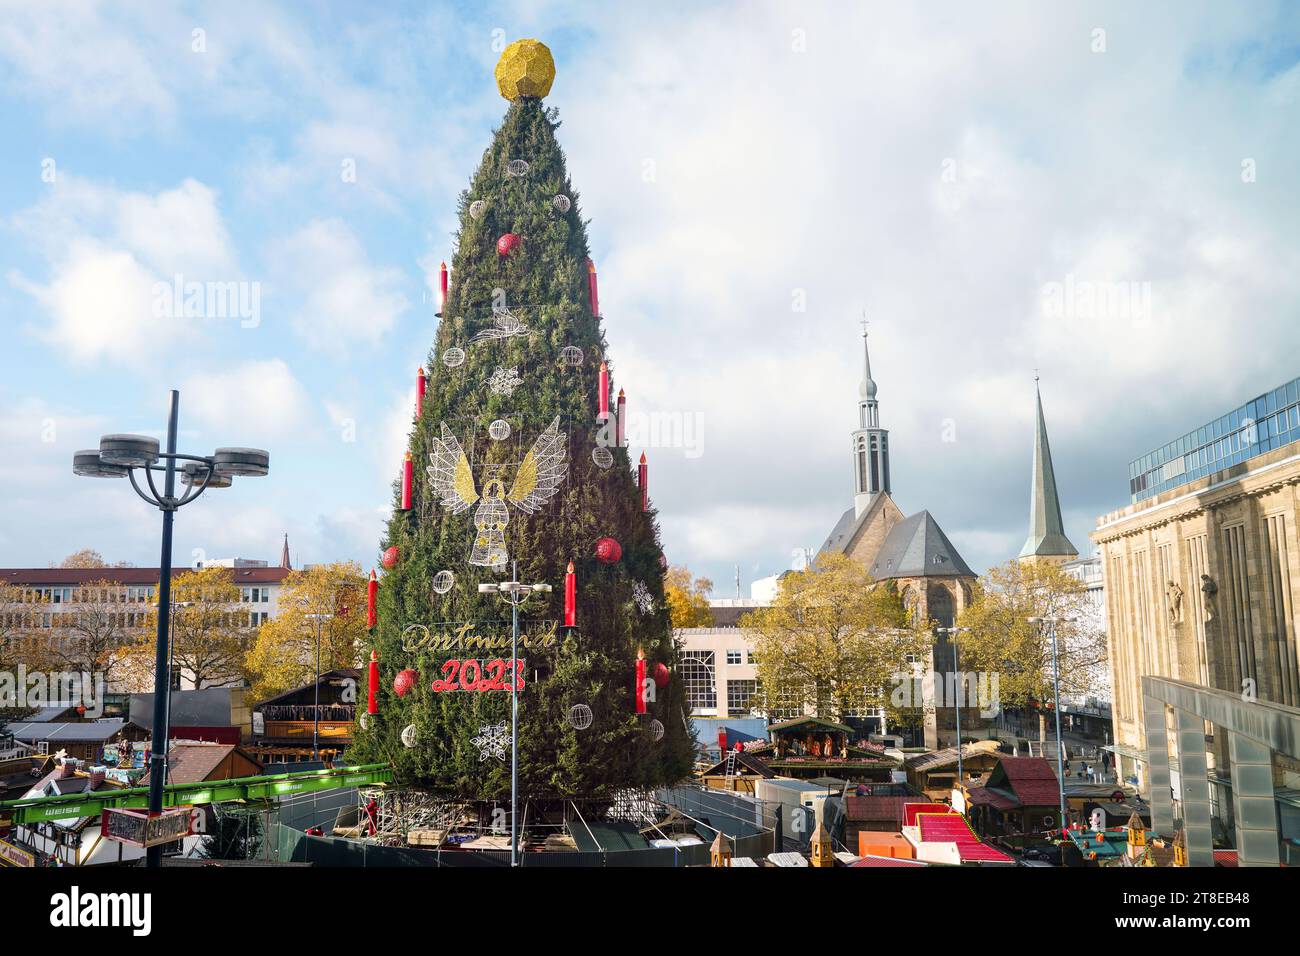 Dortmund, 20. November 2023: Auf dem Dortmunder Weihnachtsmarkt krönt ein goldener Ball den größten Weihnachtsbaum der Welt. Der Baum ist 45 Meter hoch, besteht aus 1.700 roten Fichten aus dem Sauerland und ist mit 48.000 LED-Leuchten gehängt. Der Ball auf der Oberseite ähnelt einem Fußball und wird deshalb als geschmacklos und weihnachtlich unpassend kritisiert --- eine goldene Kugel krönt den weltweit größten Weihnachtsbaum auf dem Dortmunder Weihnachtsmarkt. Der Baum ist 45 Meter hoch, besteht aus 1700 Rotfichten aus dem Sauerland und ist mit 48,000 LED-Lichtern behängt. Die Kugel auf der Sp Stockfoto